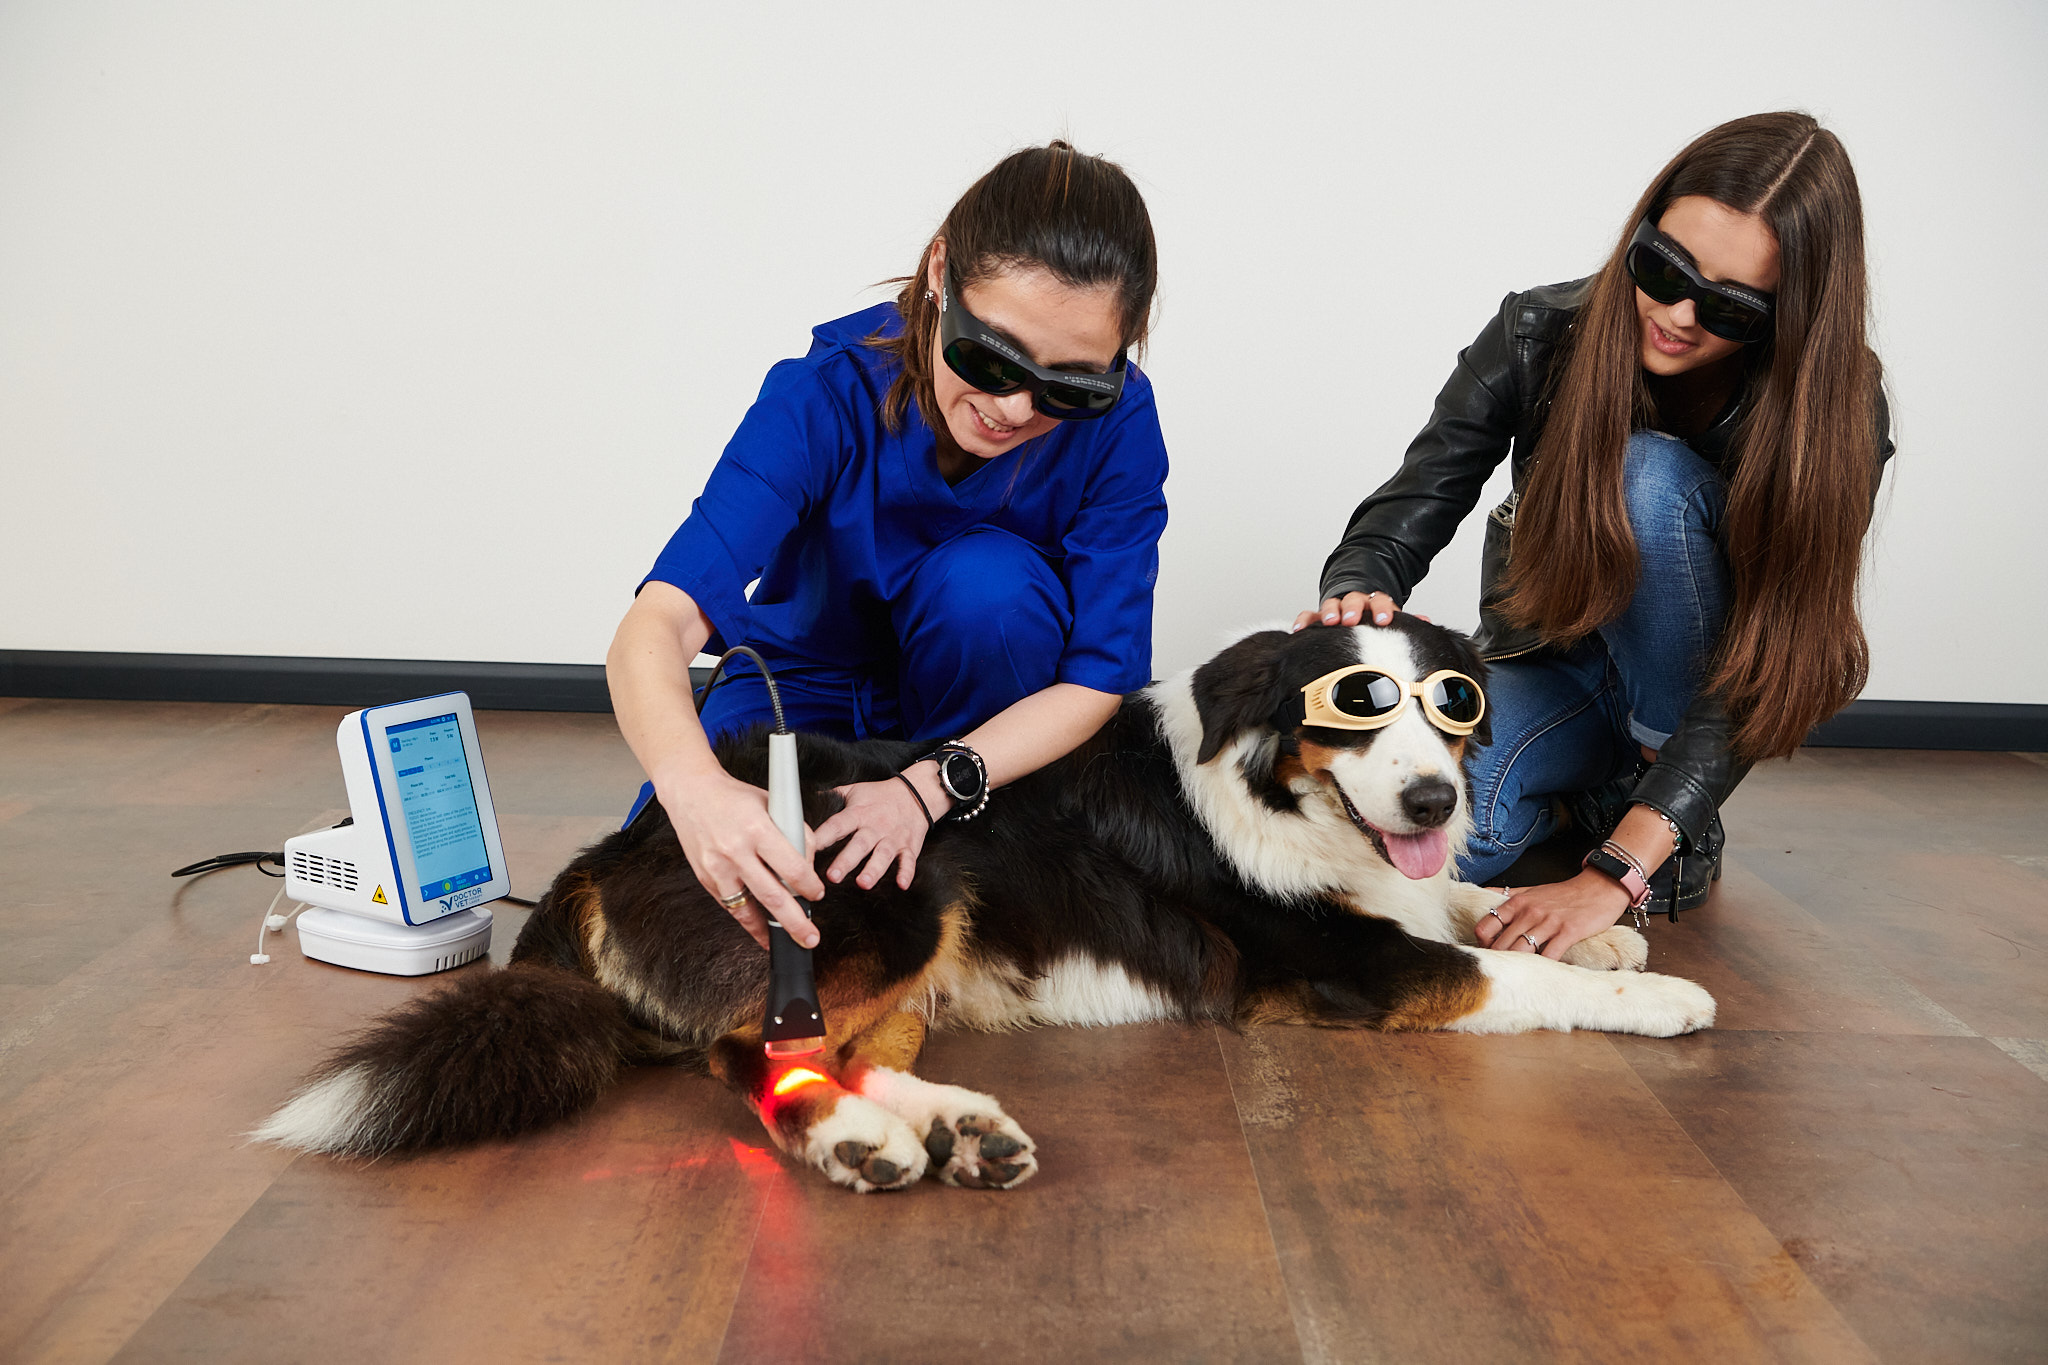 Perché investire in un laser terapeutico?